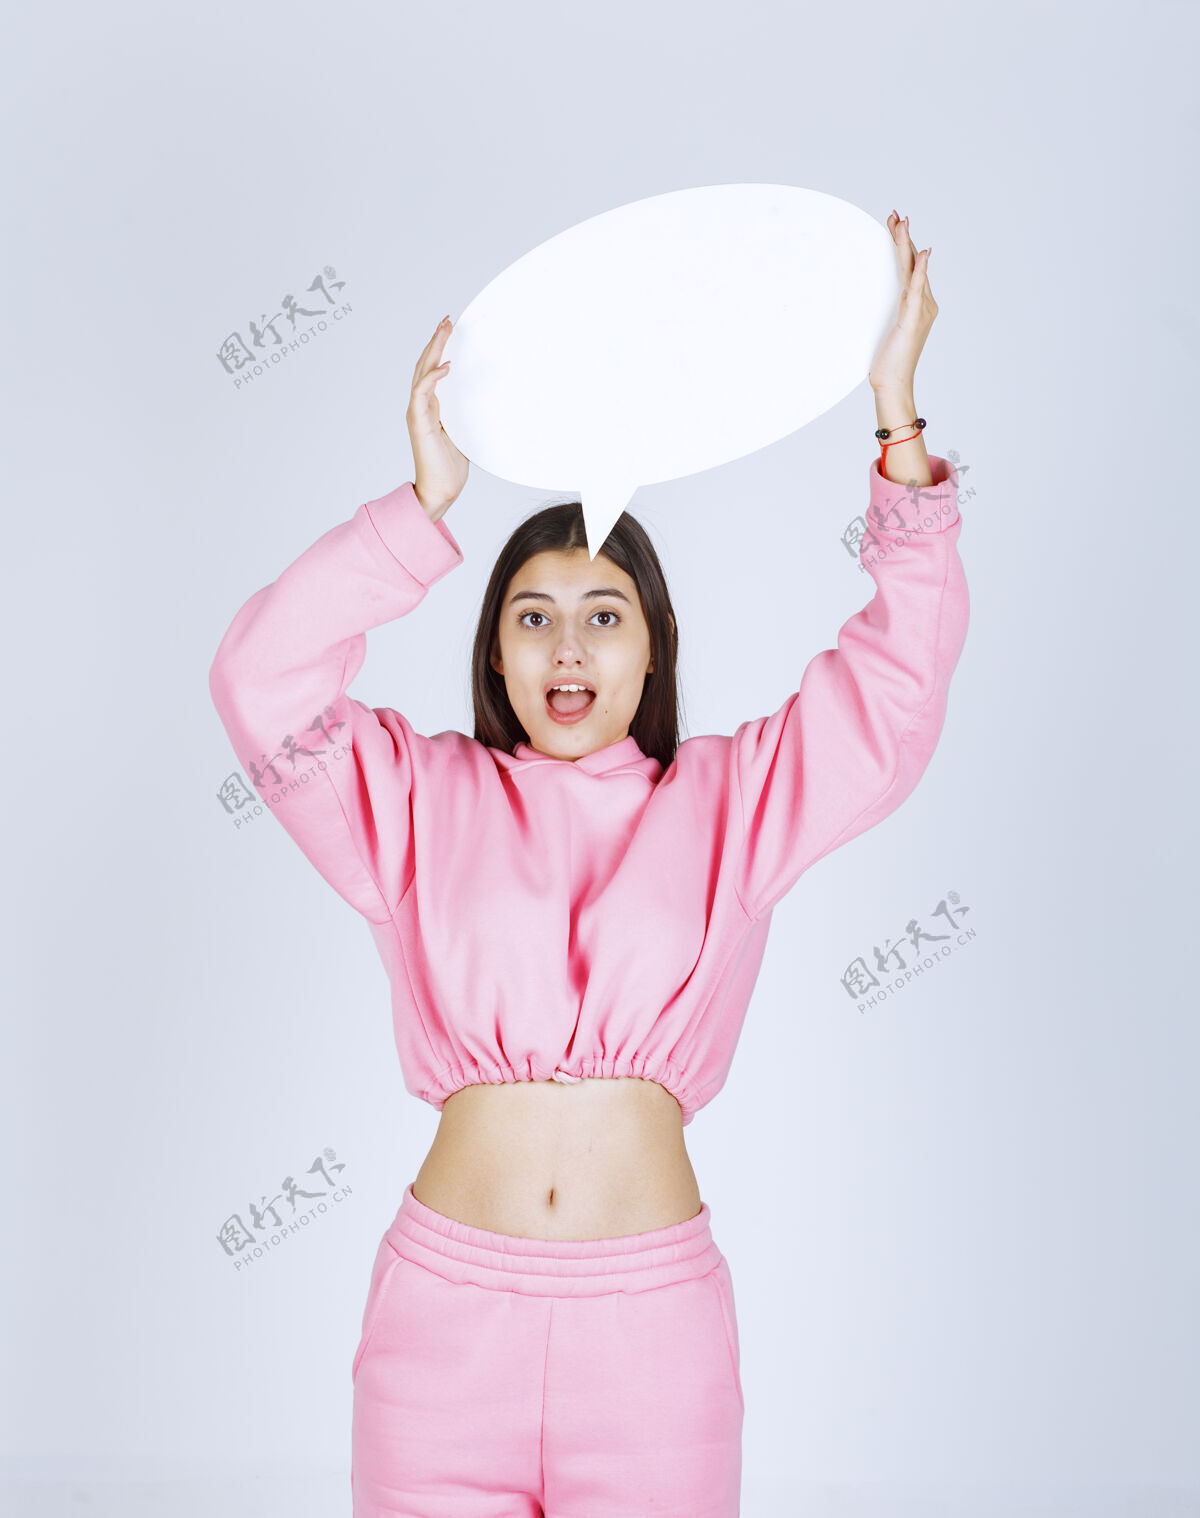 模特穿着粉红色睡衣的女孩头上举着一个圆形的思考板照片聪明人类